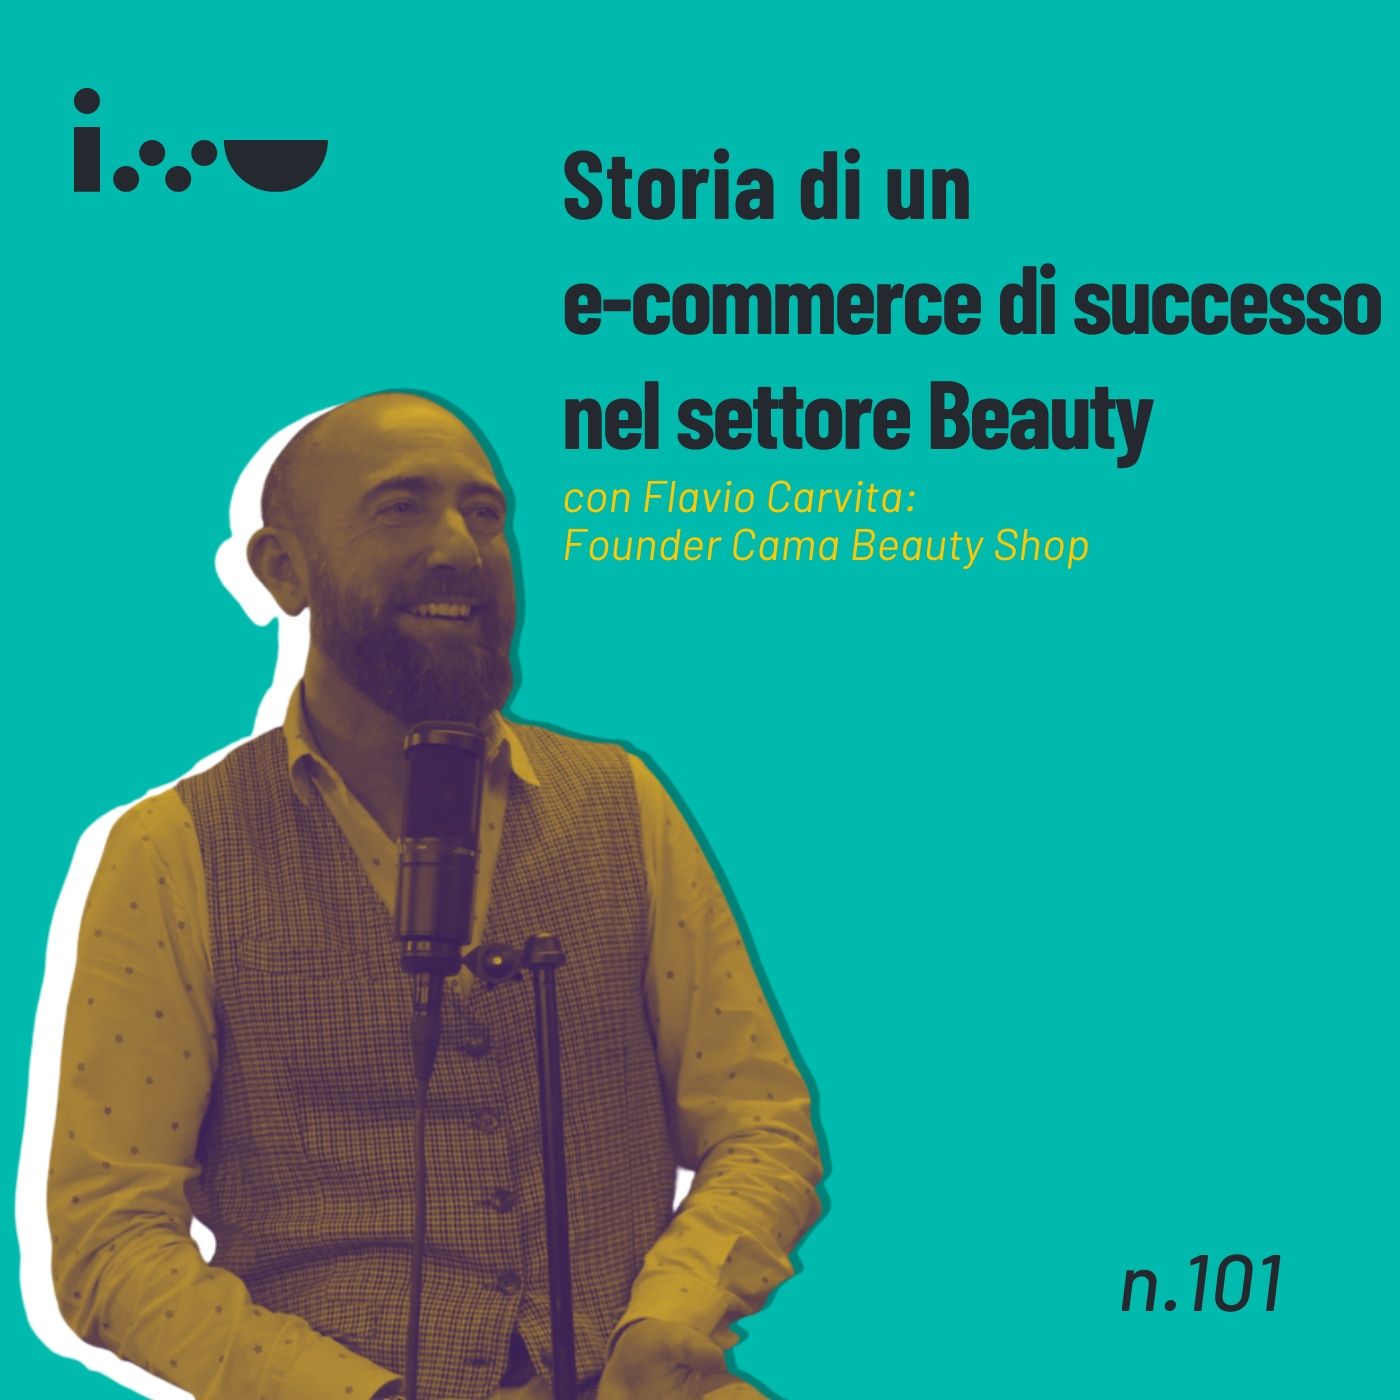 Storia di un e-commerce di successo nel settore Beauty